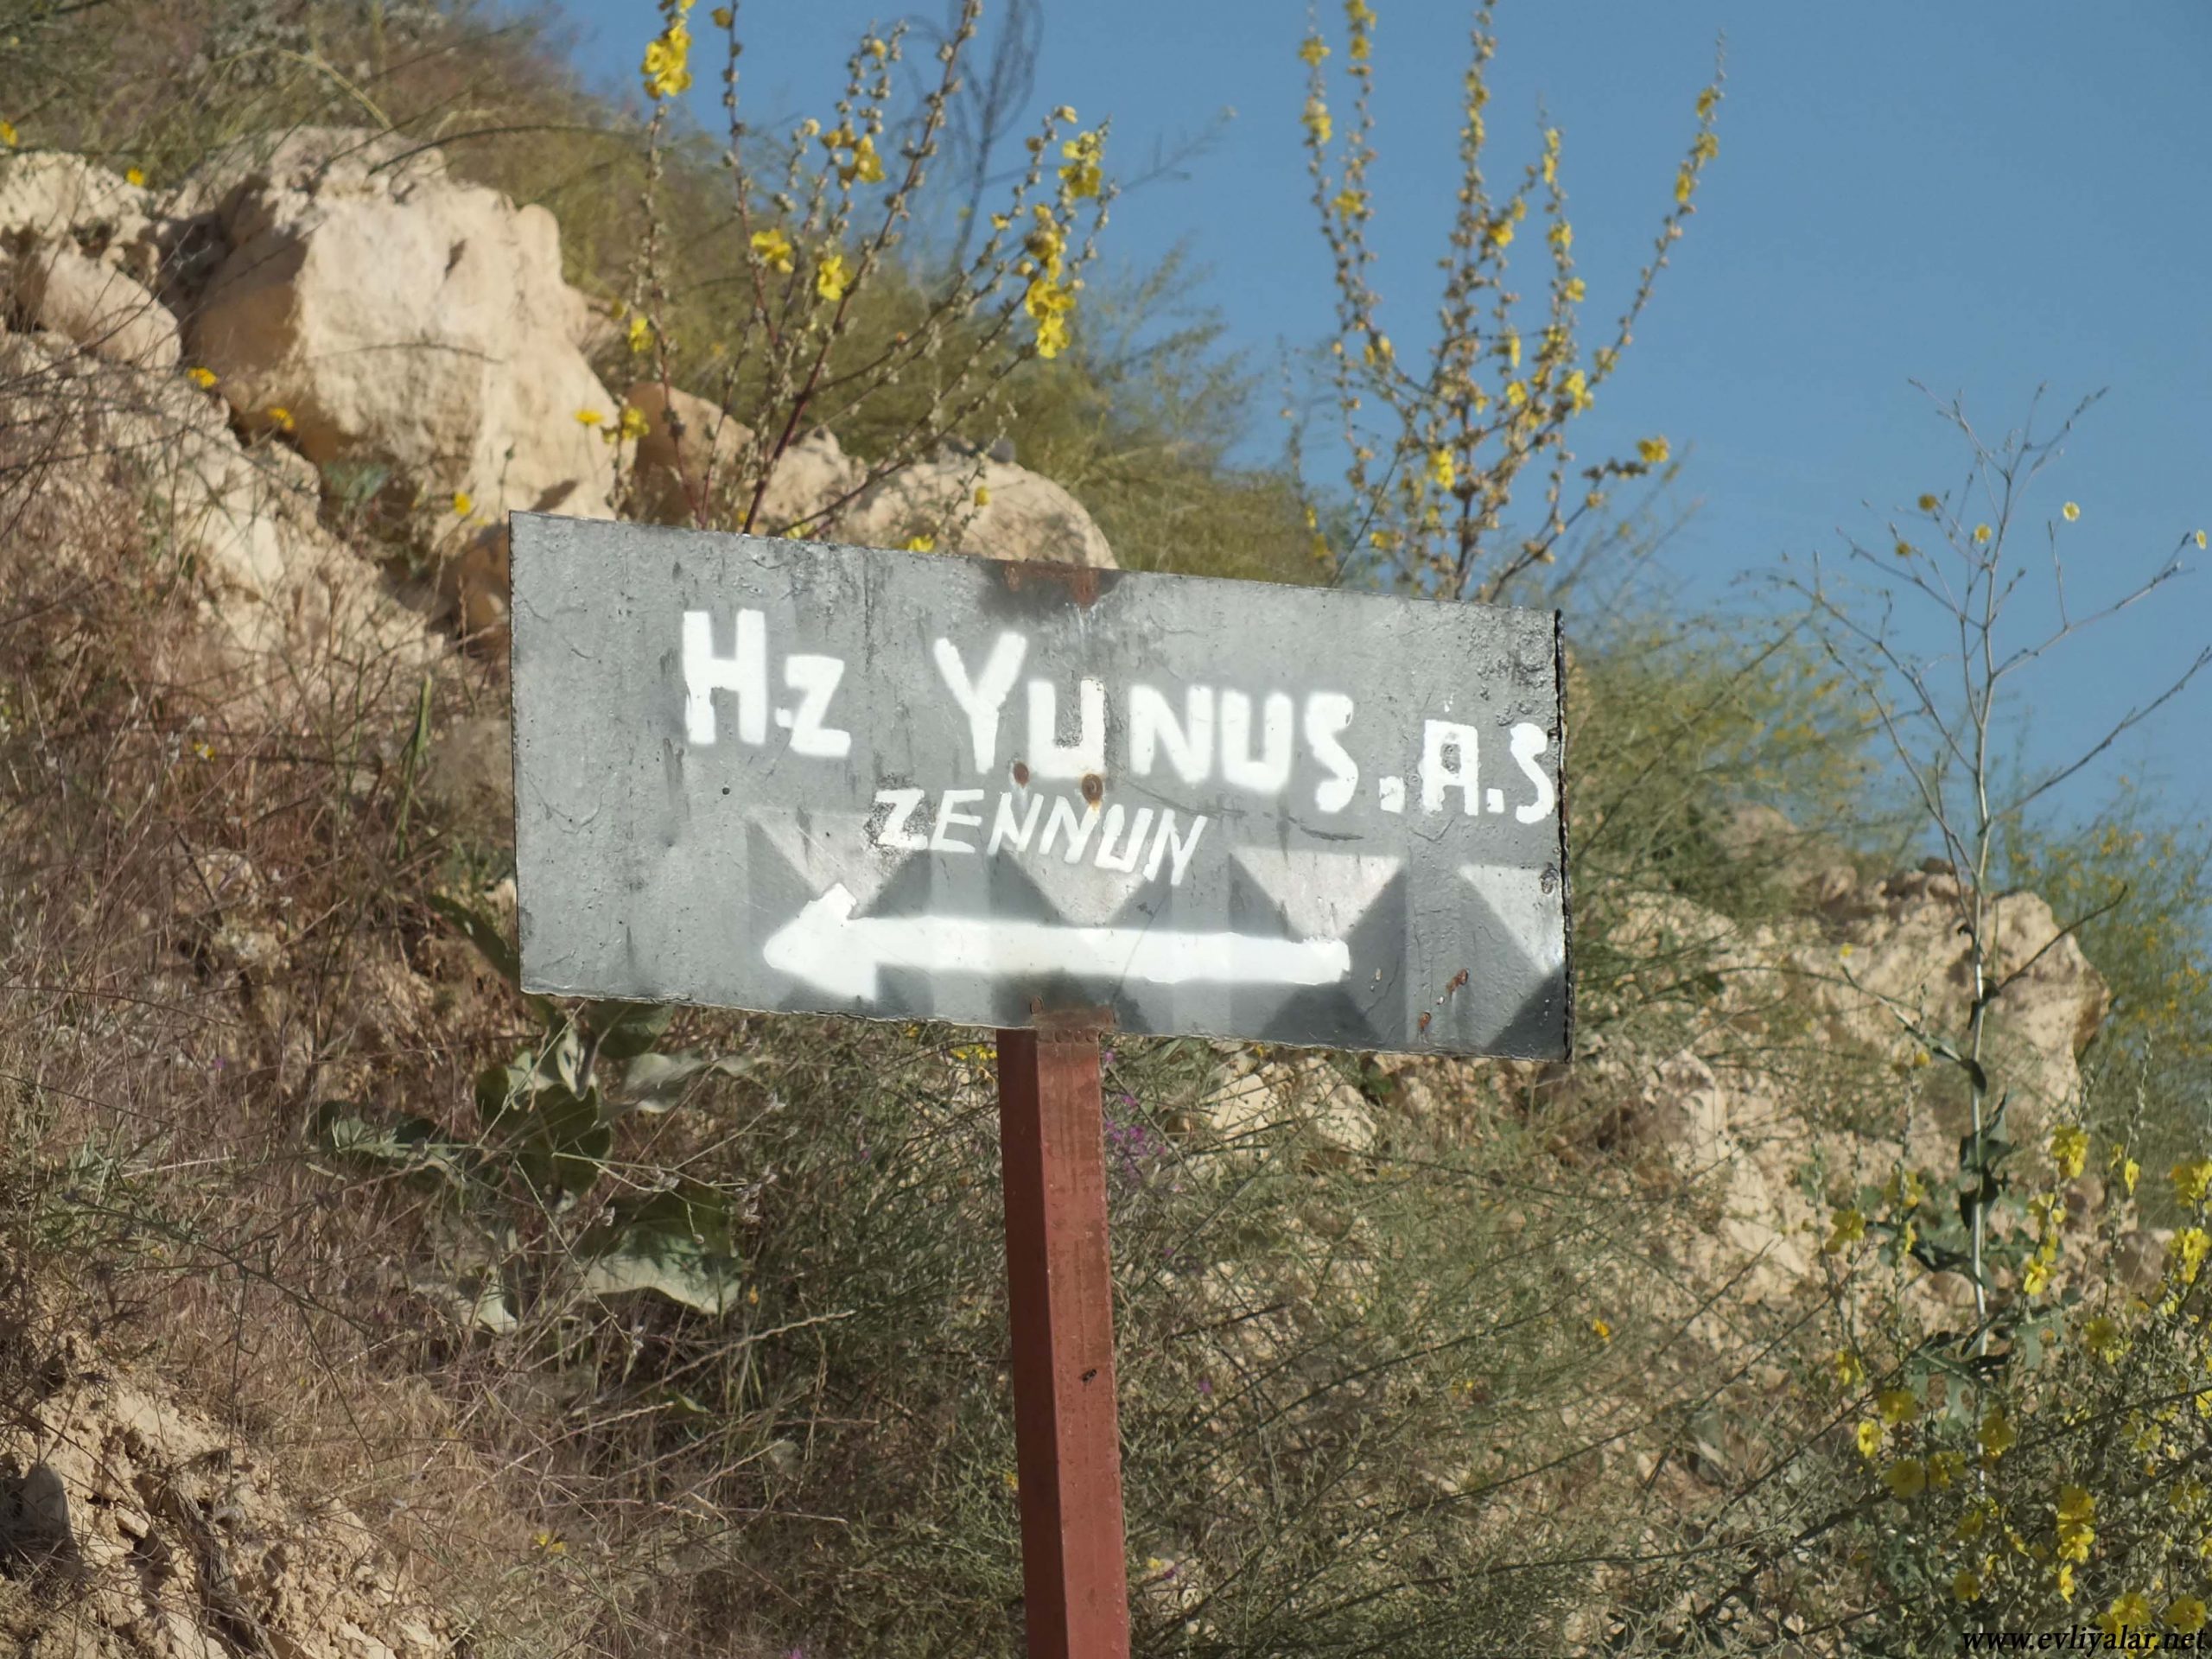 Hz. Nebi Zünnun (Yunus) (a.s.) – Diyarbakır